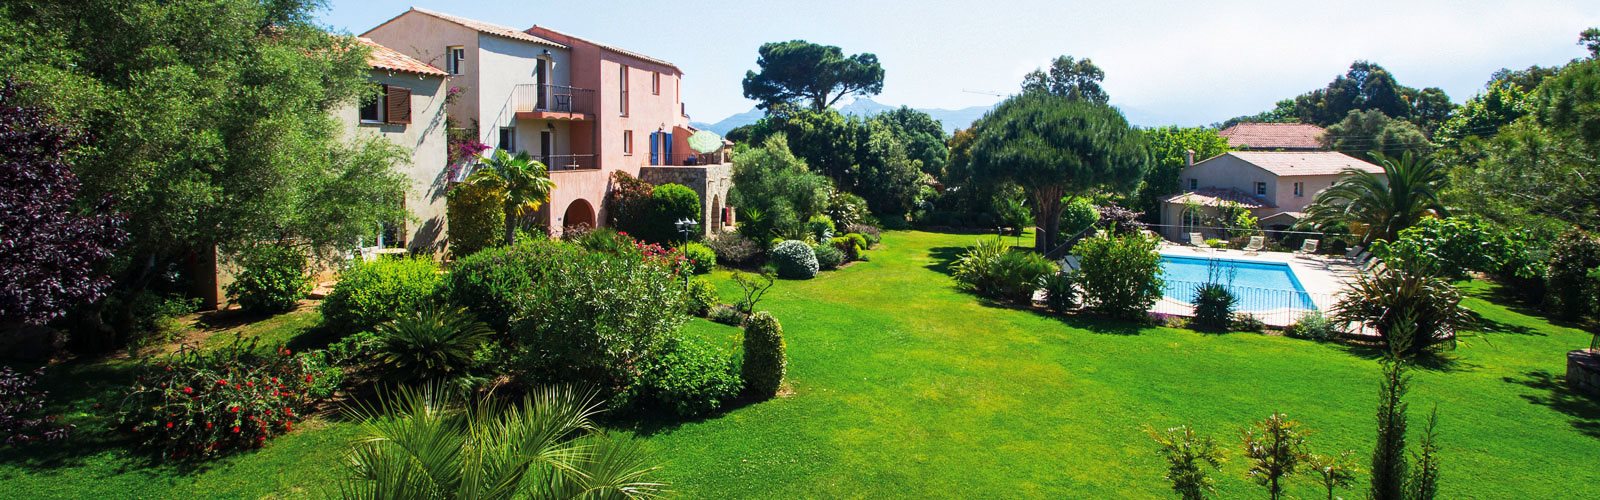 Prächtige Gartenanlage mit Pool und Ferienwohnungen in Calvi